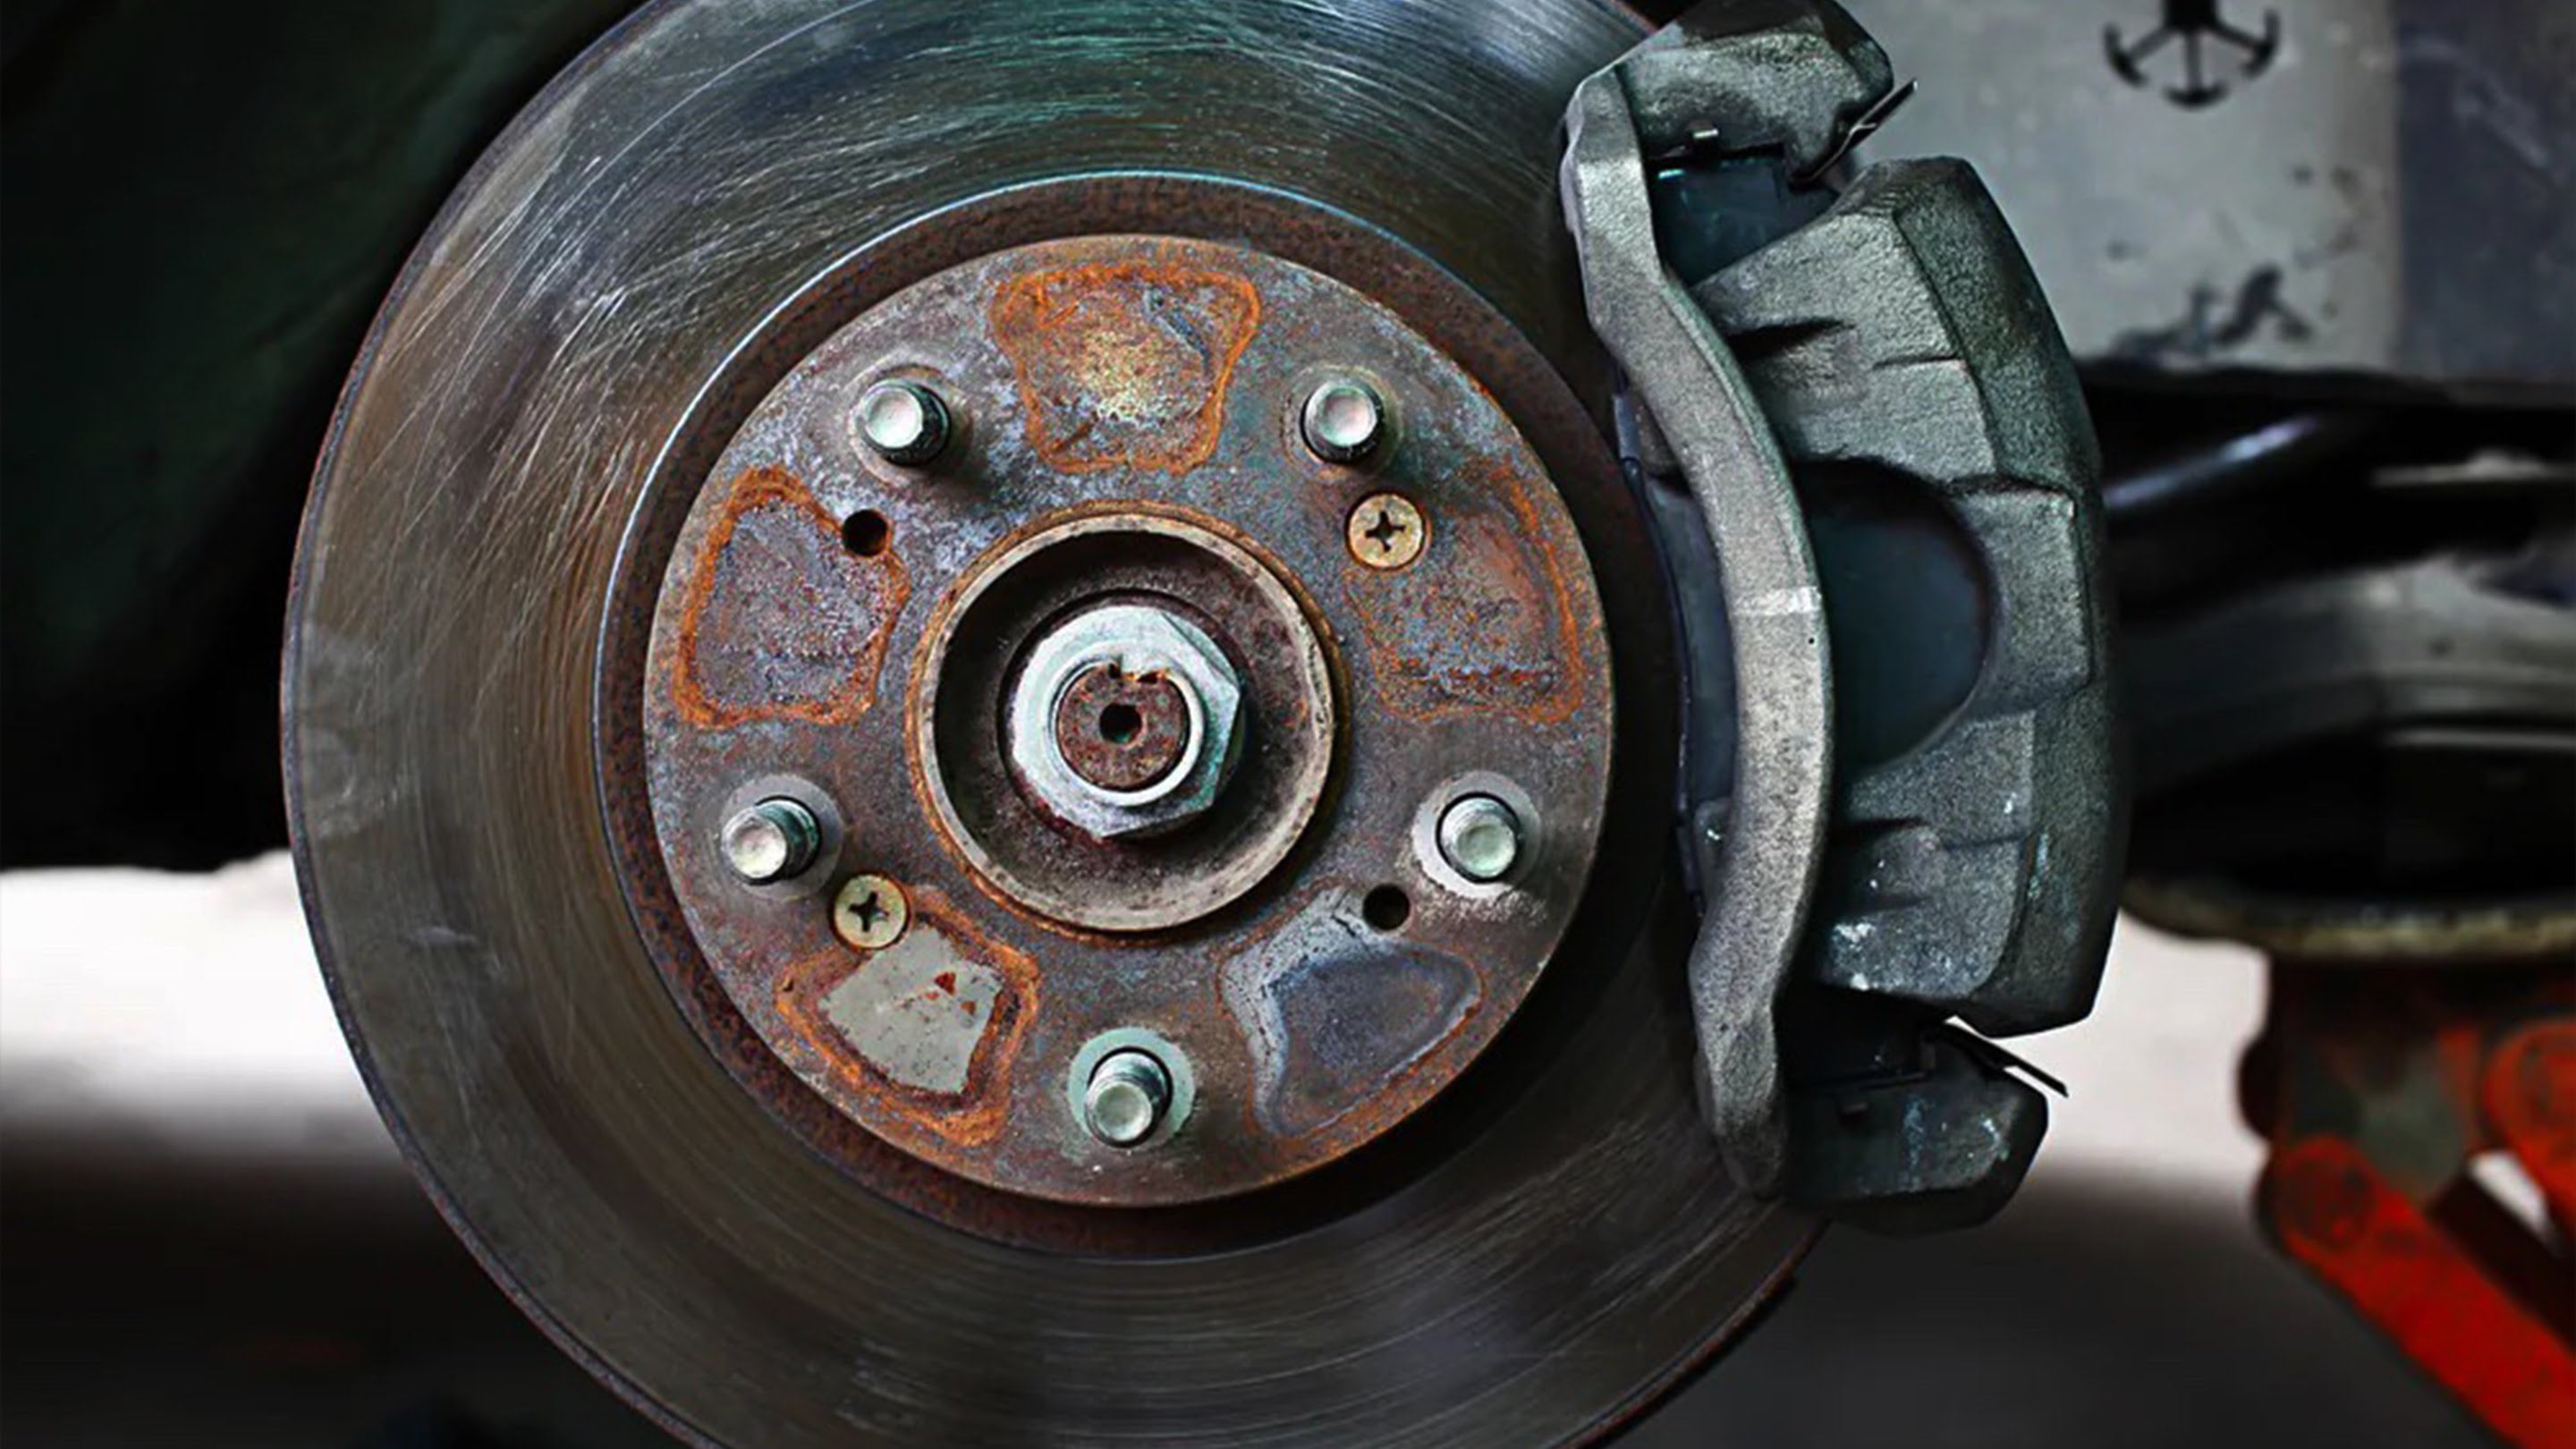 Close-up of warped brake rotor on vehicle wheel